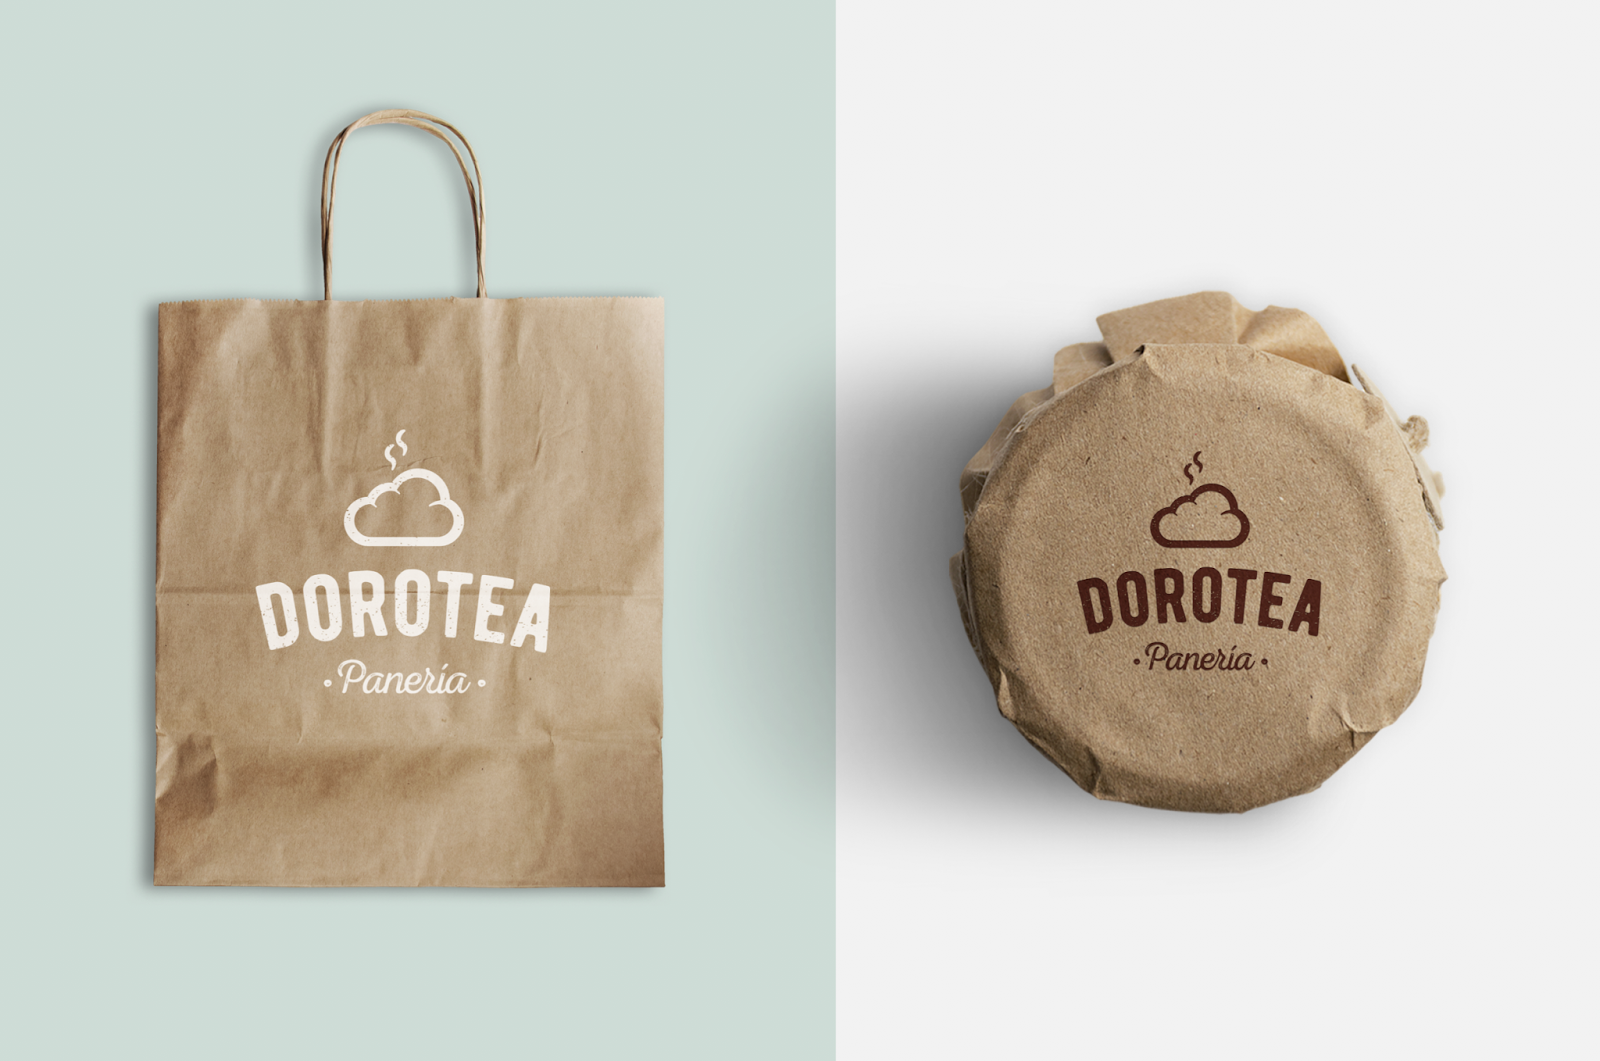 哥斯达黎加面包店西安oe欧亿体育app官方下载
品牌包装设计